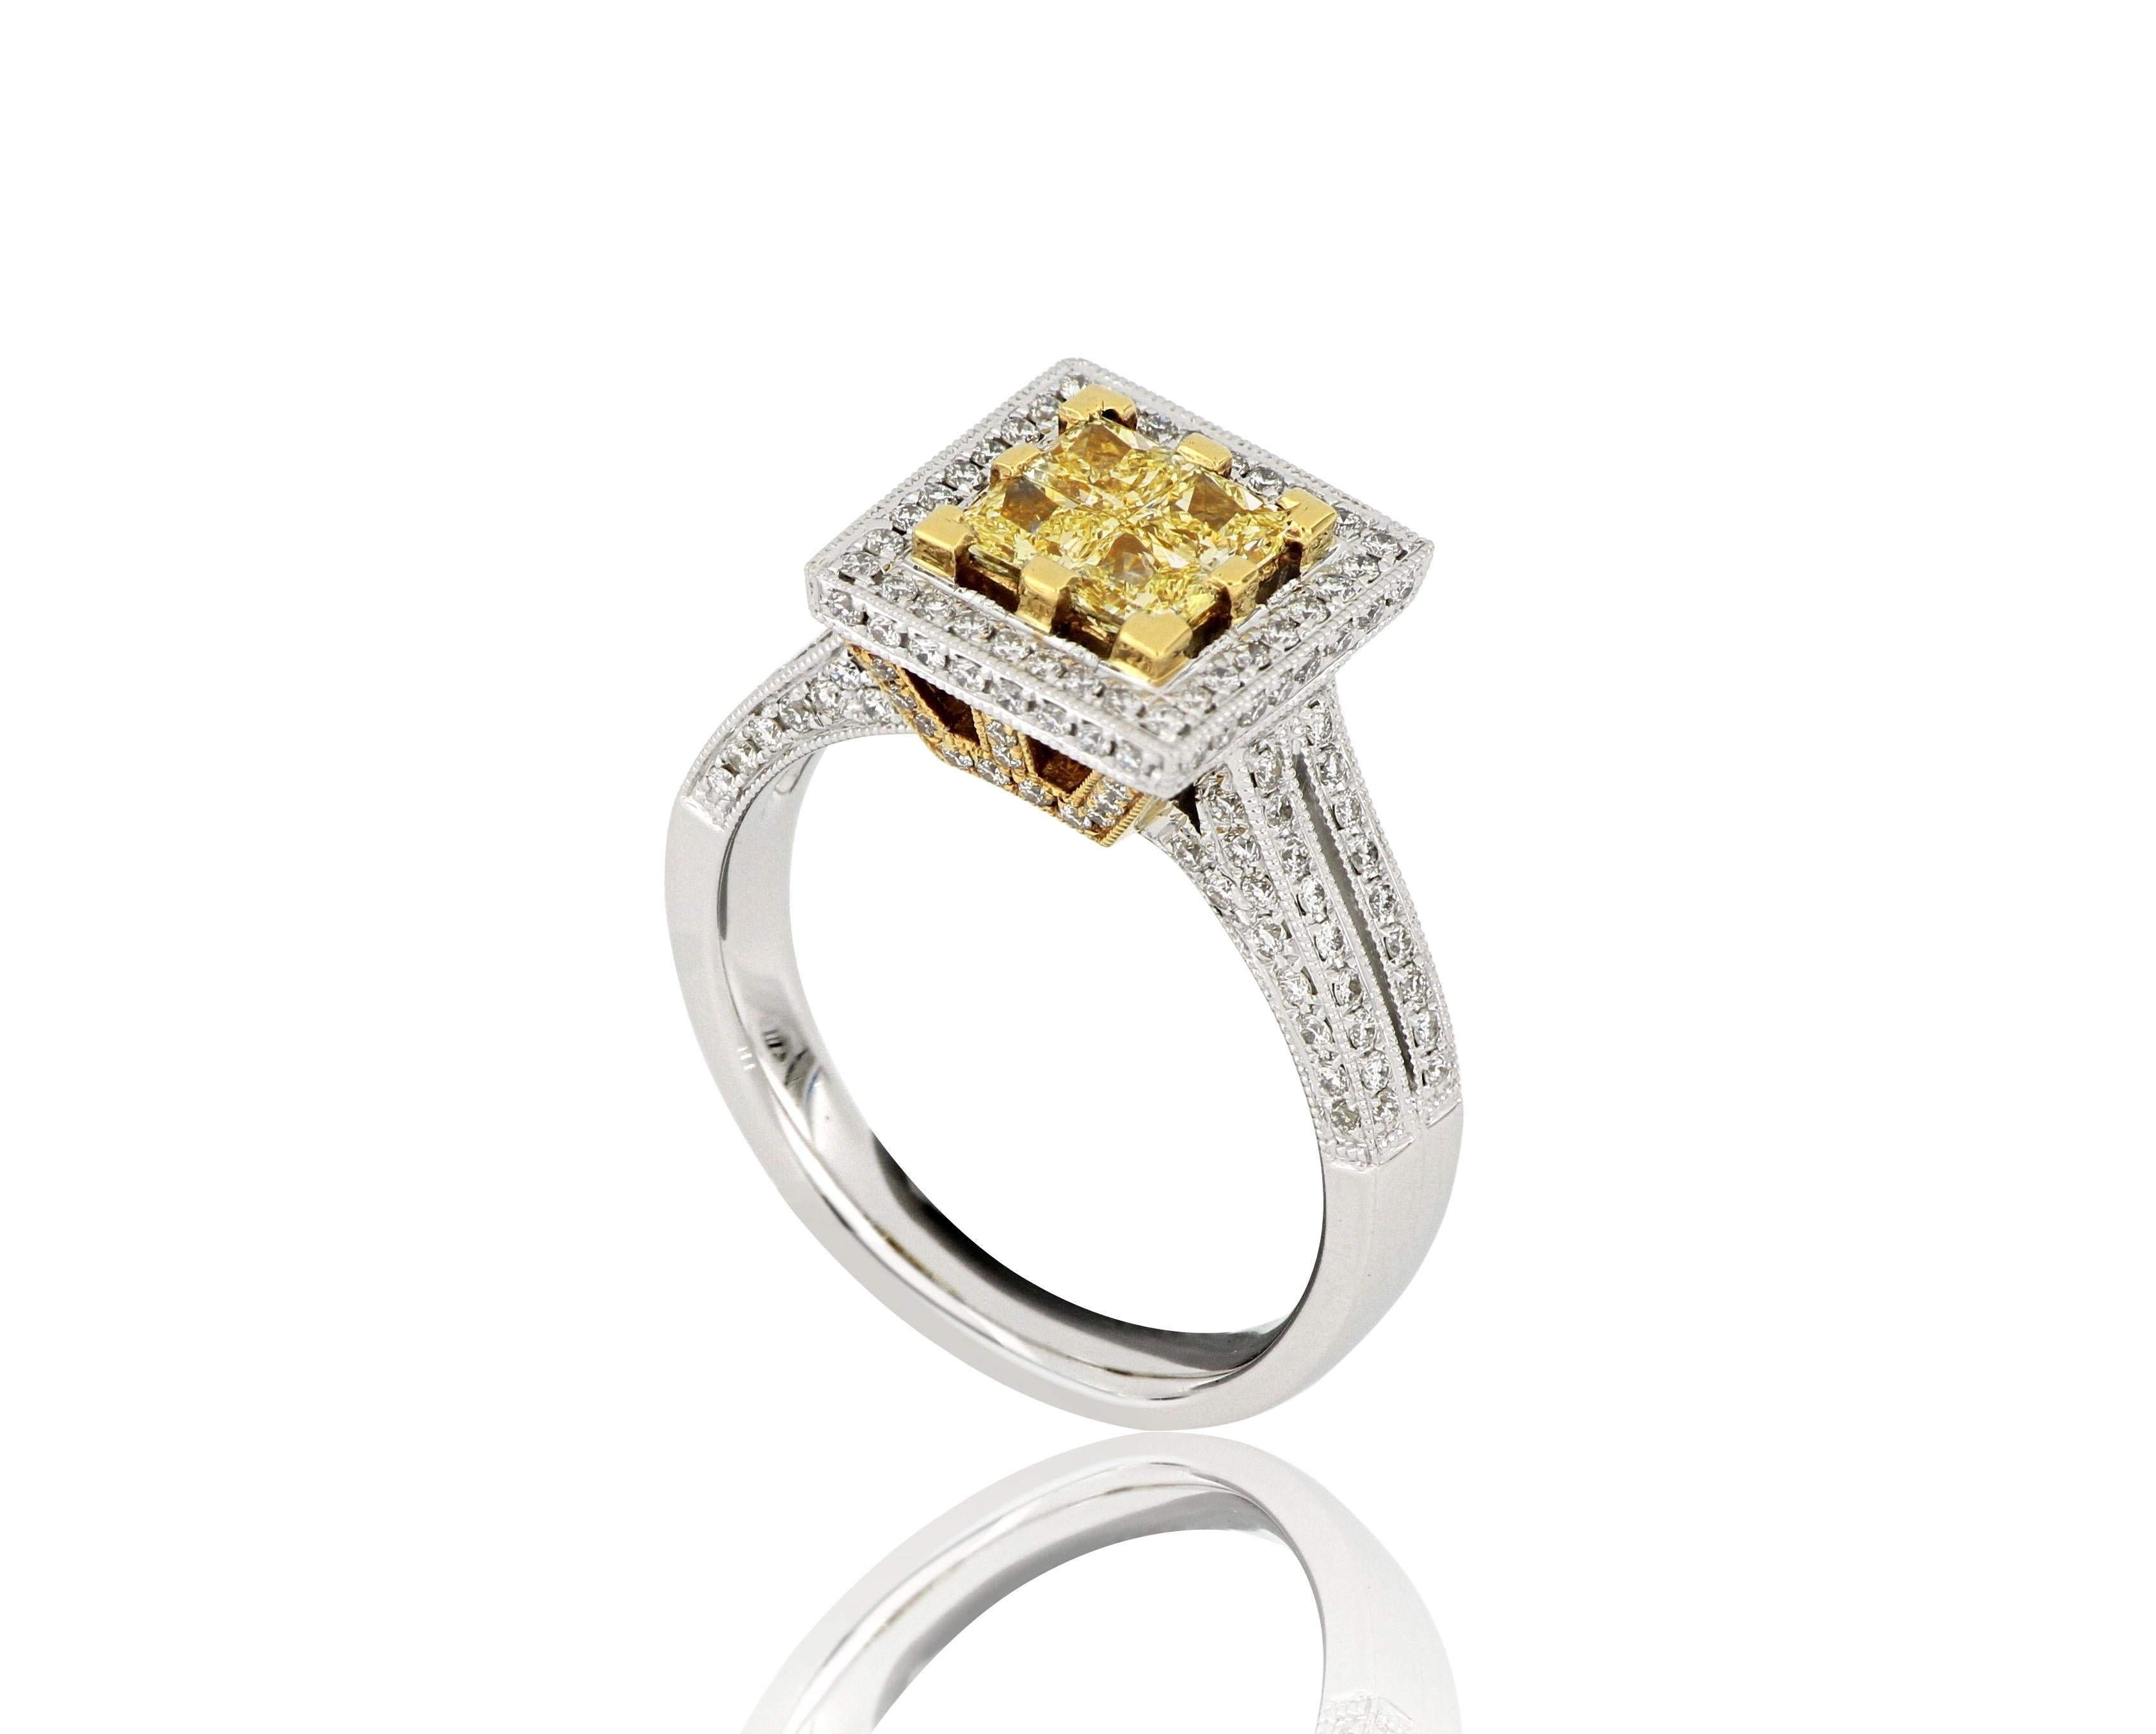 Ein Diamantring, besetzt mit natürlichen Diamanten im Quadratschliff  gelbe Diamanten mit einem Gewicht von etwa 0,62 Karat, flankiert von weißen Diamanten im Brillantschliff mit einem Gewicht von etwa 0,56 Karat, gefasst in 18  Karat